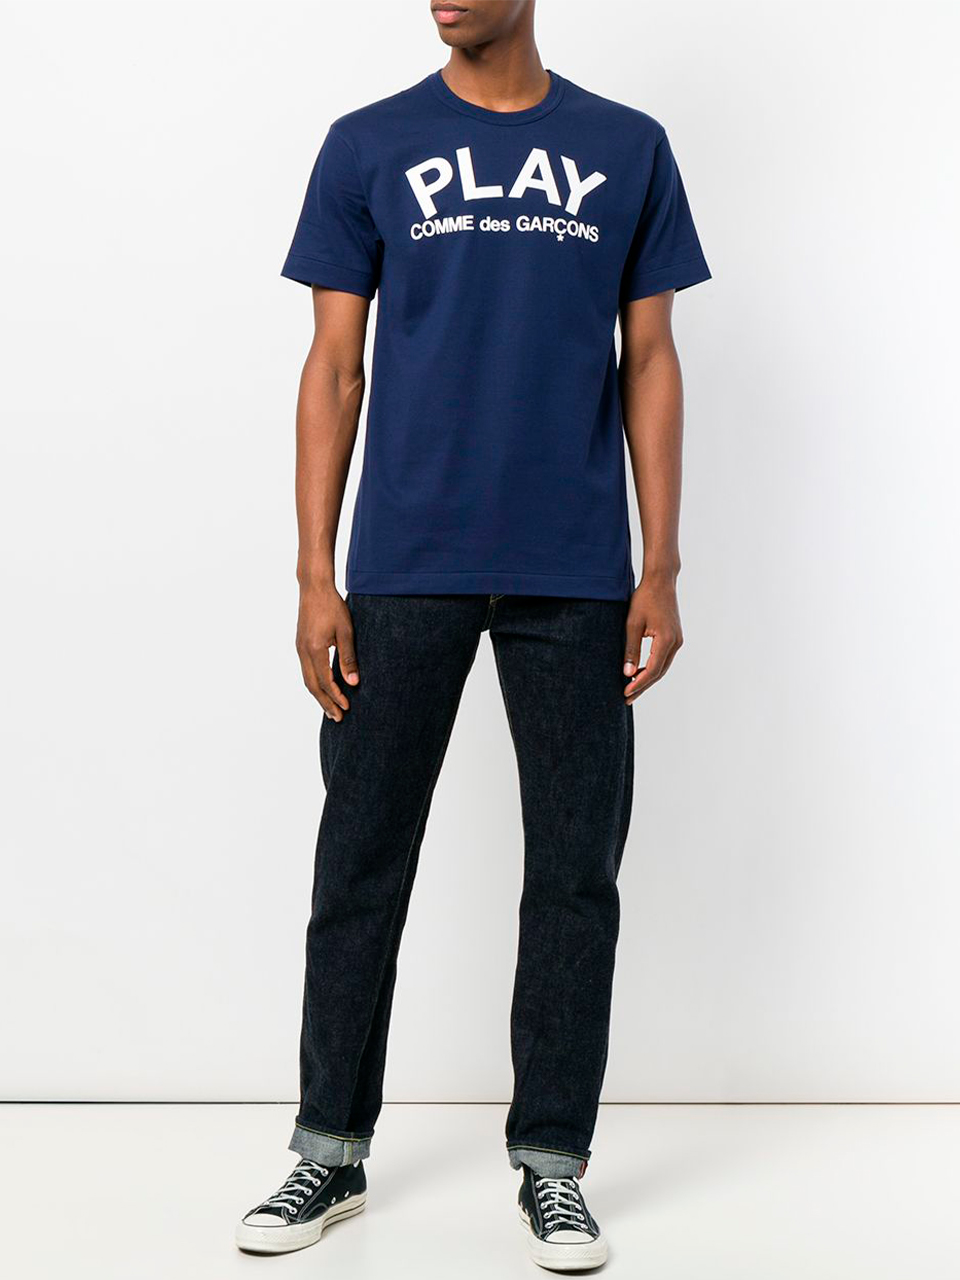 Imagem de: Camiseta Comme Des Garçons Play Azul com Estampa